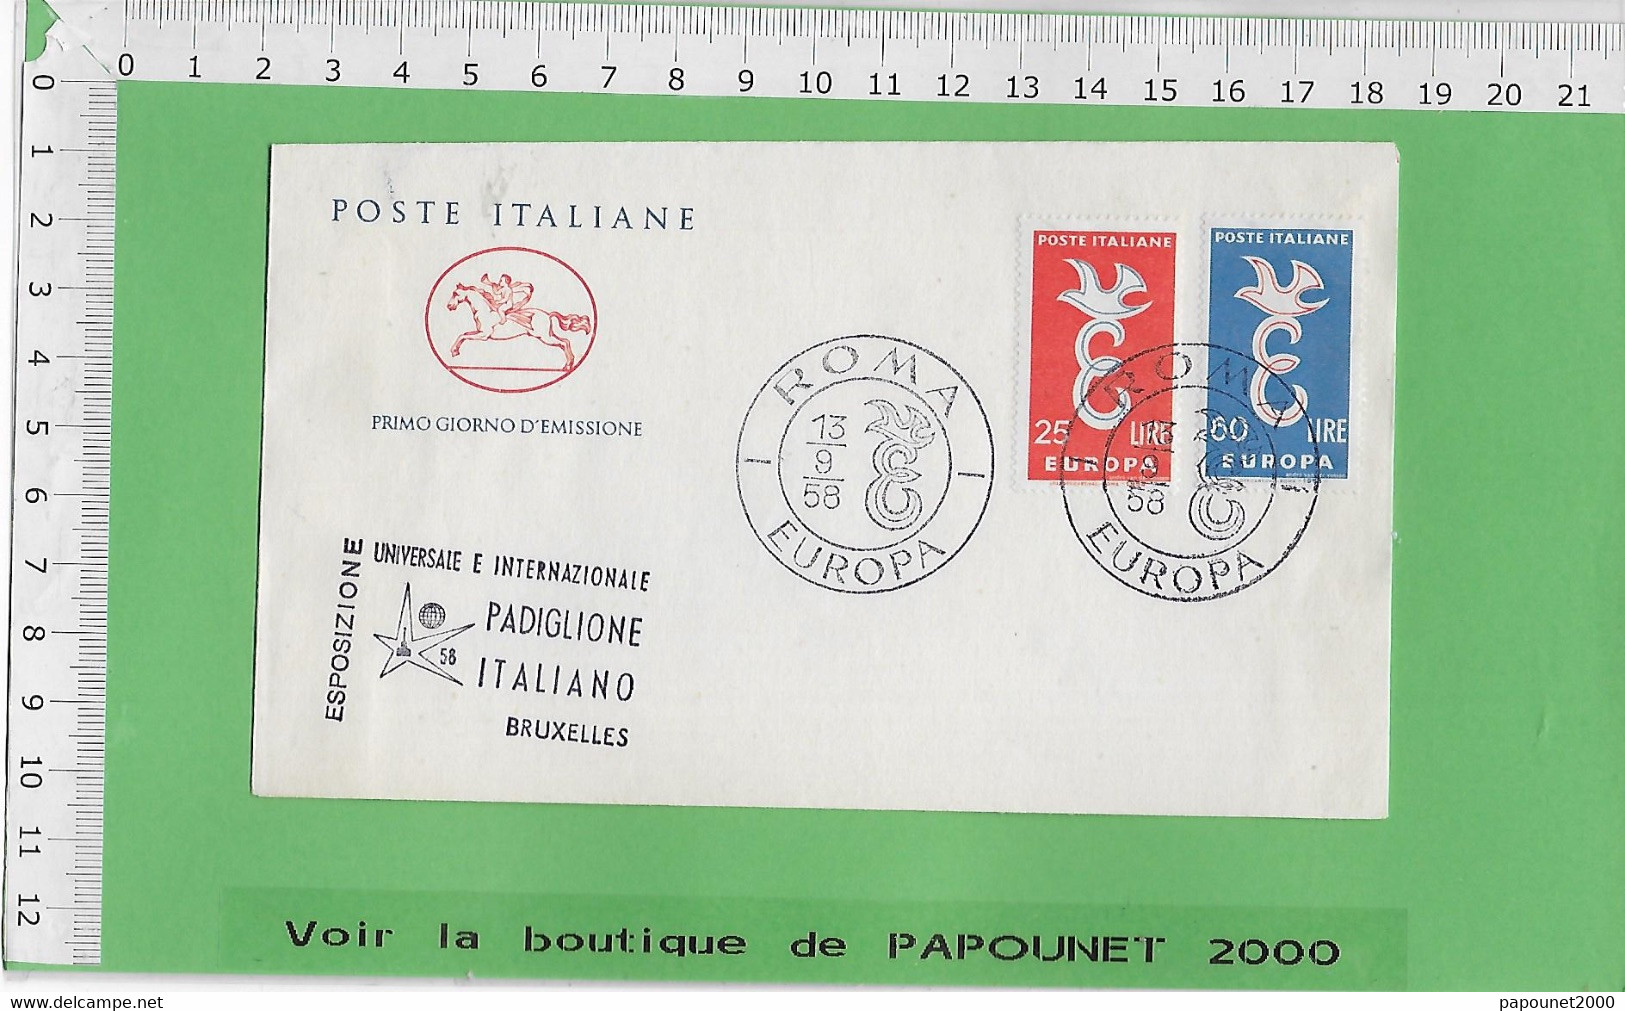 02578 - E BE04 1000-EXPO 58 : Timbre*Enveloppe / PRIMO GIORNO D EMISSIONE: PAVILLON ITALIEN - 1958 – Brüssel (Belgien)